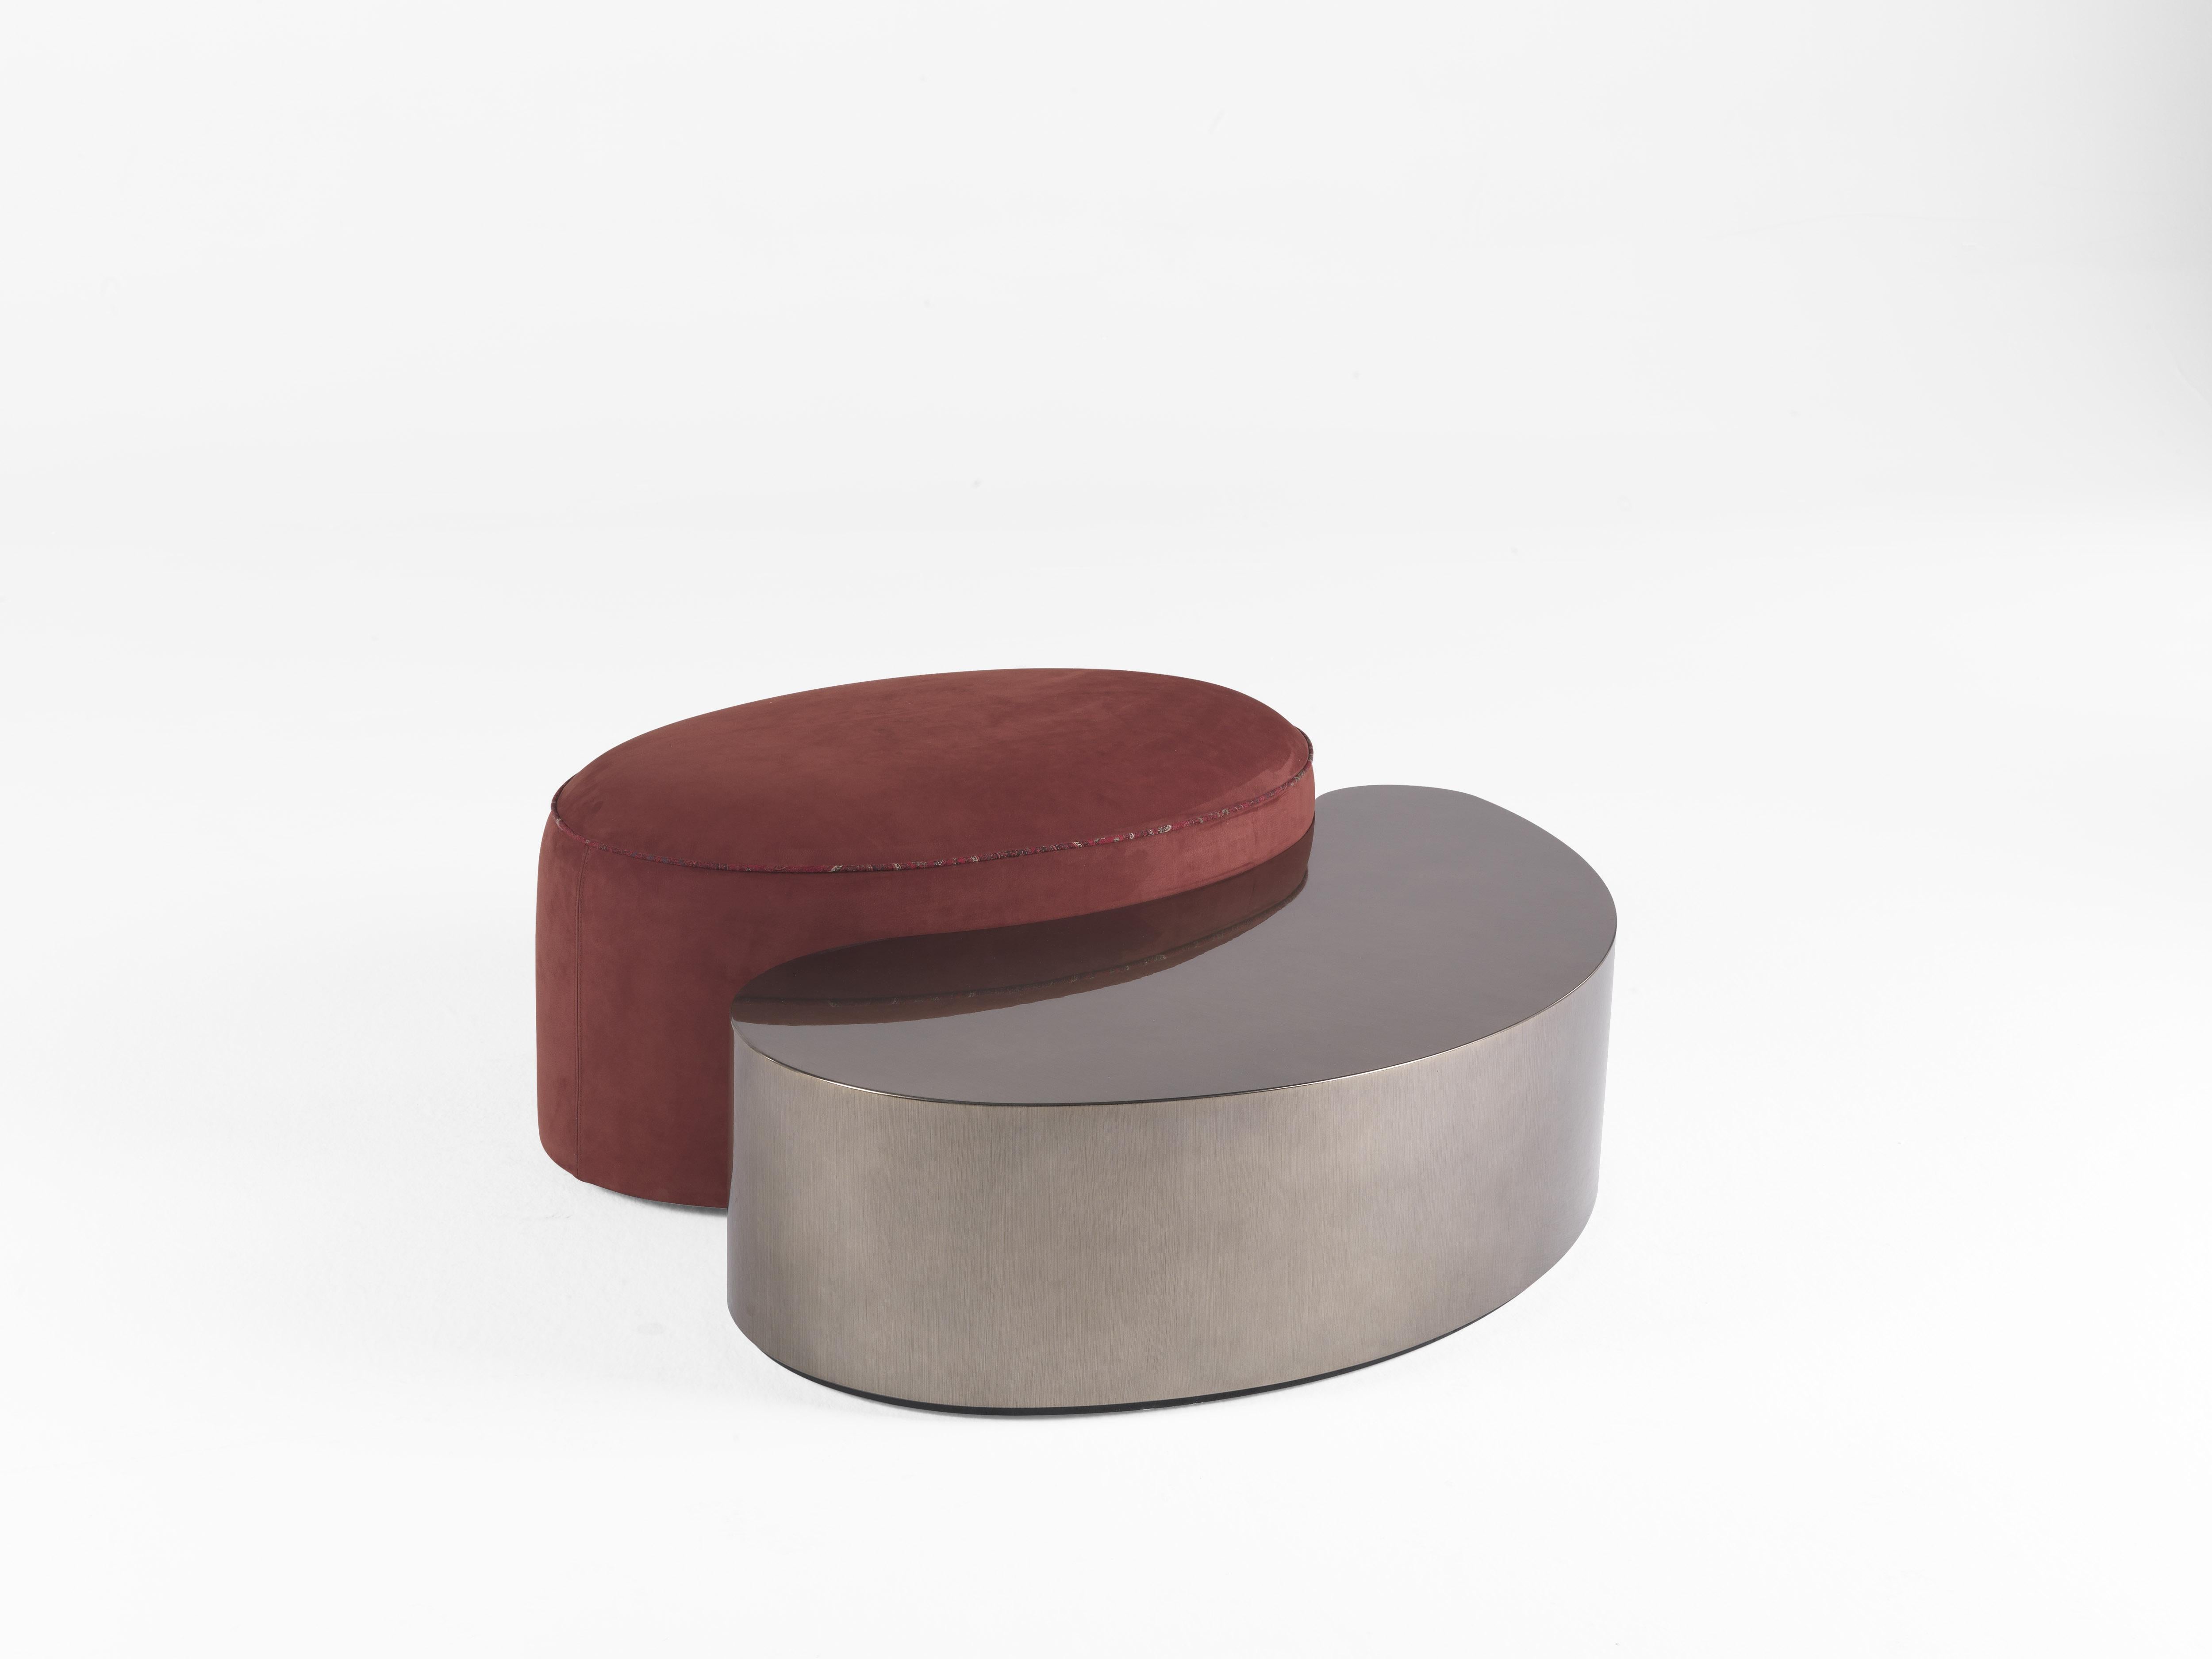 Eine emblematische Umarmung zwischen zwei verschiedenen Elementen: die Paisley-Form und die ovalen Komponenten aus verschiedenen Materialien treffen aufeinander und schaffen unendliche Kompositionen.

GOA Pouf und zentraler Tisch 
Paisley-förmiger